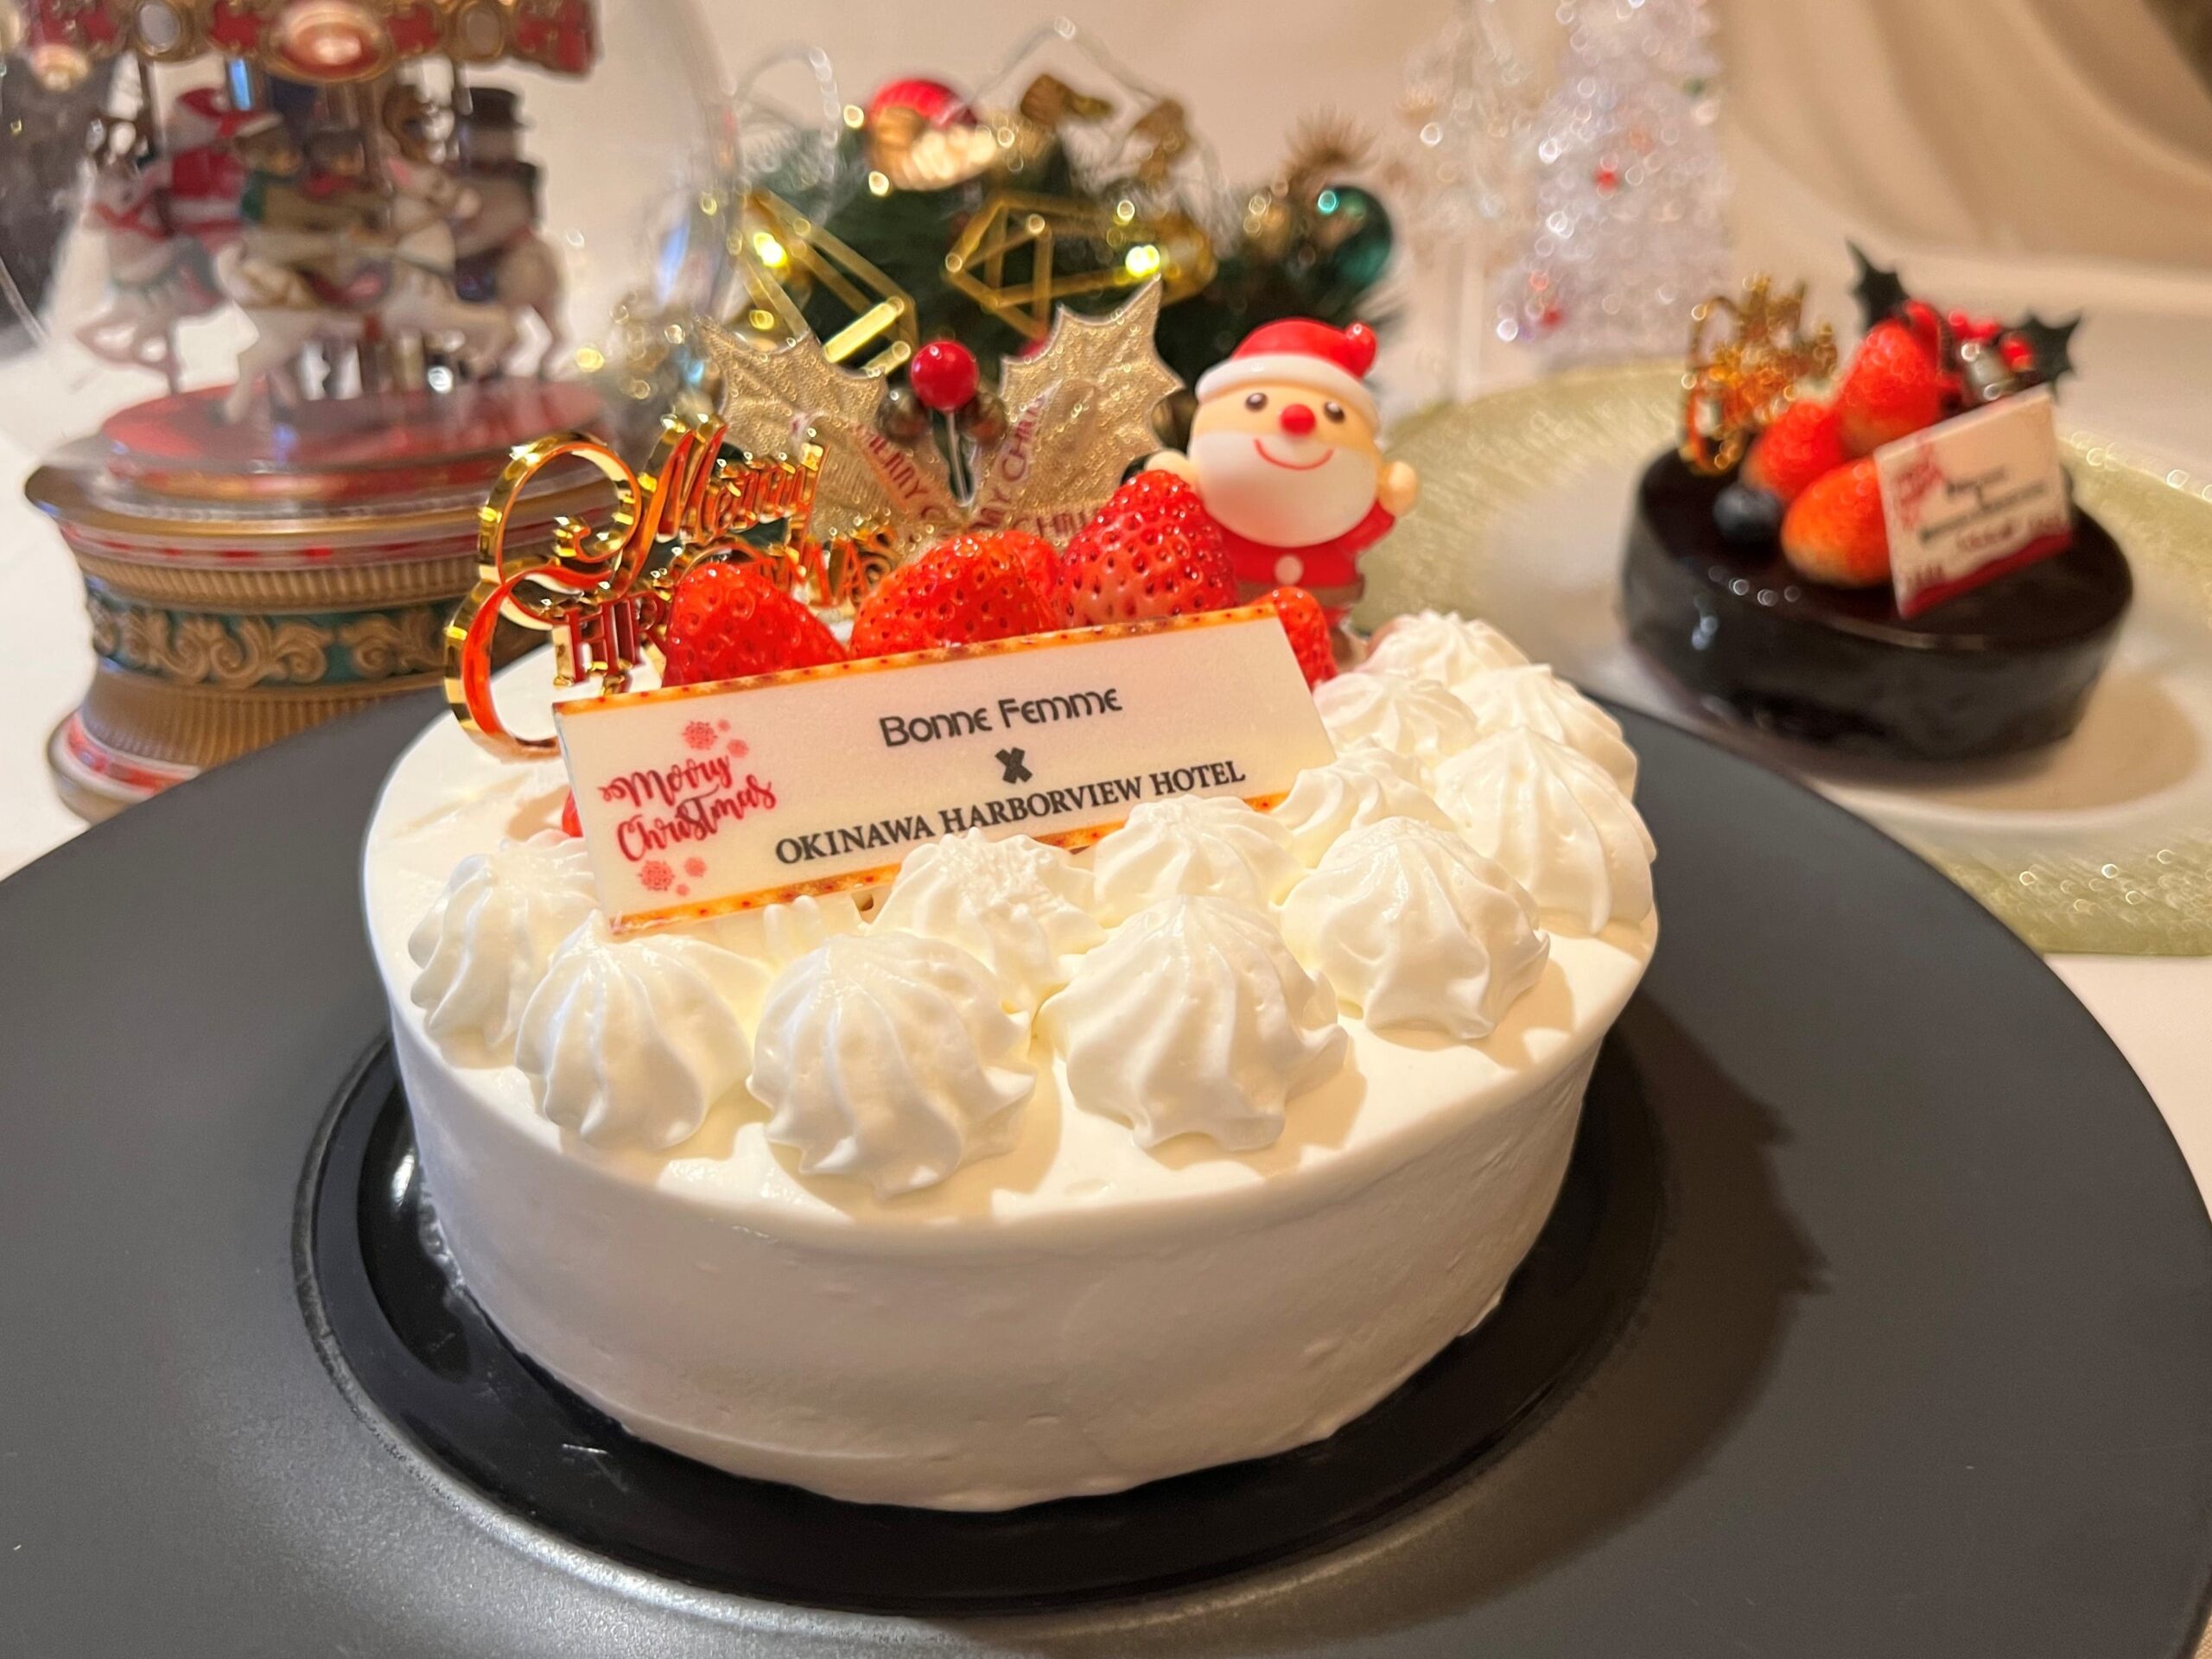 祝福を込めて贈る<br>沖縄ハーバービューホテルの<br>クリスマスケーキ＆ローストチキンの画像